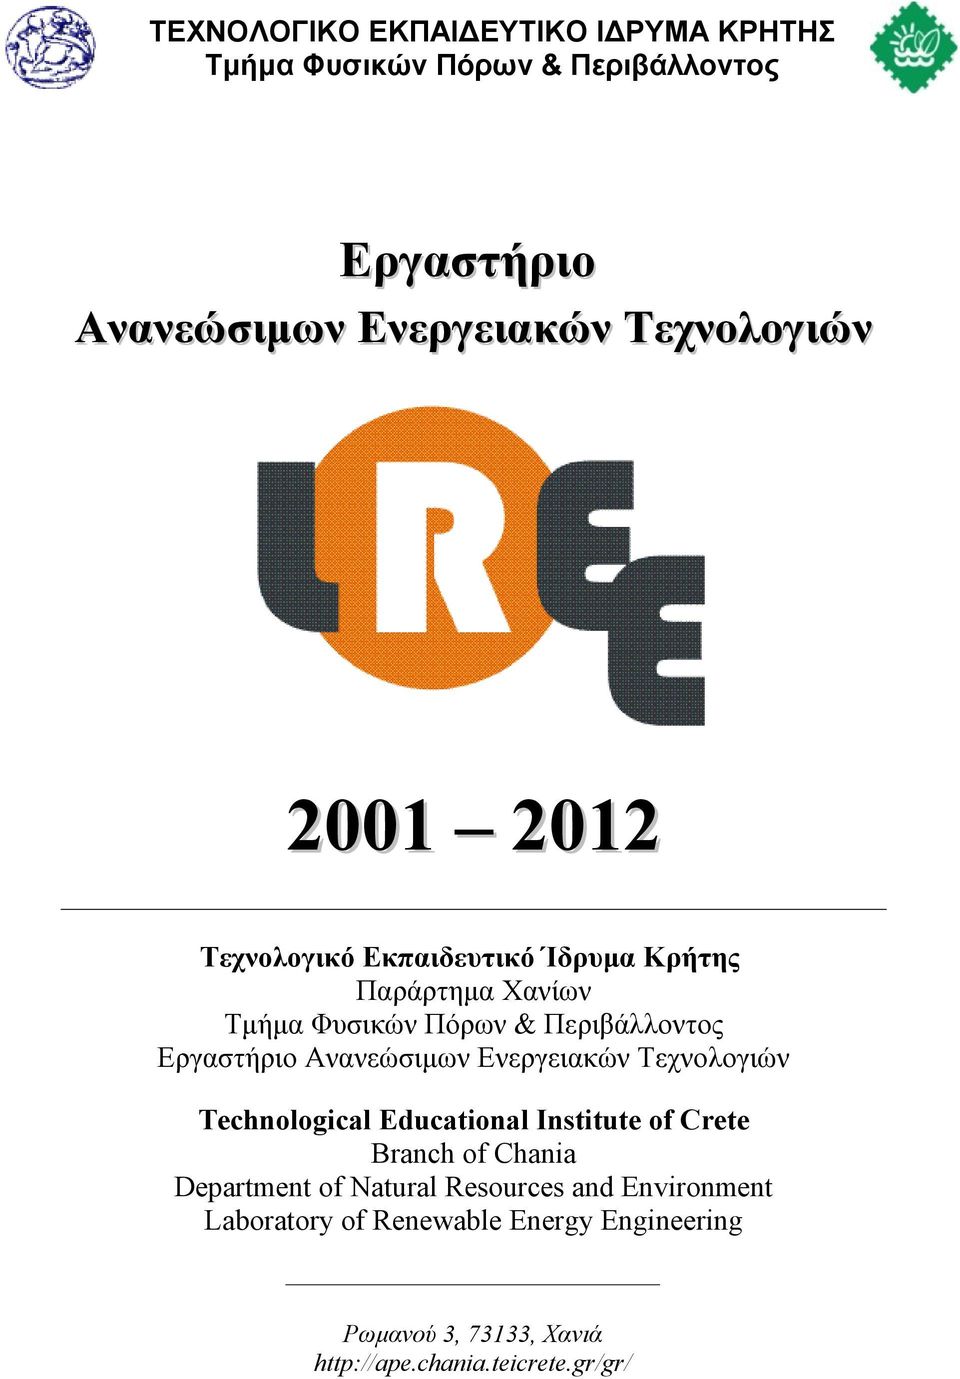 Εργαστήριο Ανανεώσιμων Ενεργειακών Τεχνολογιών Technological Educational Institute of Crete Branch of Chania Department